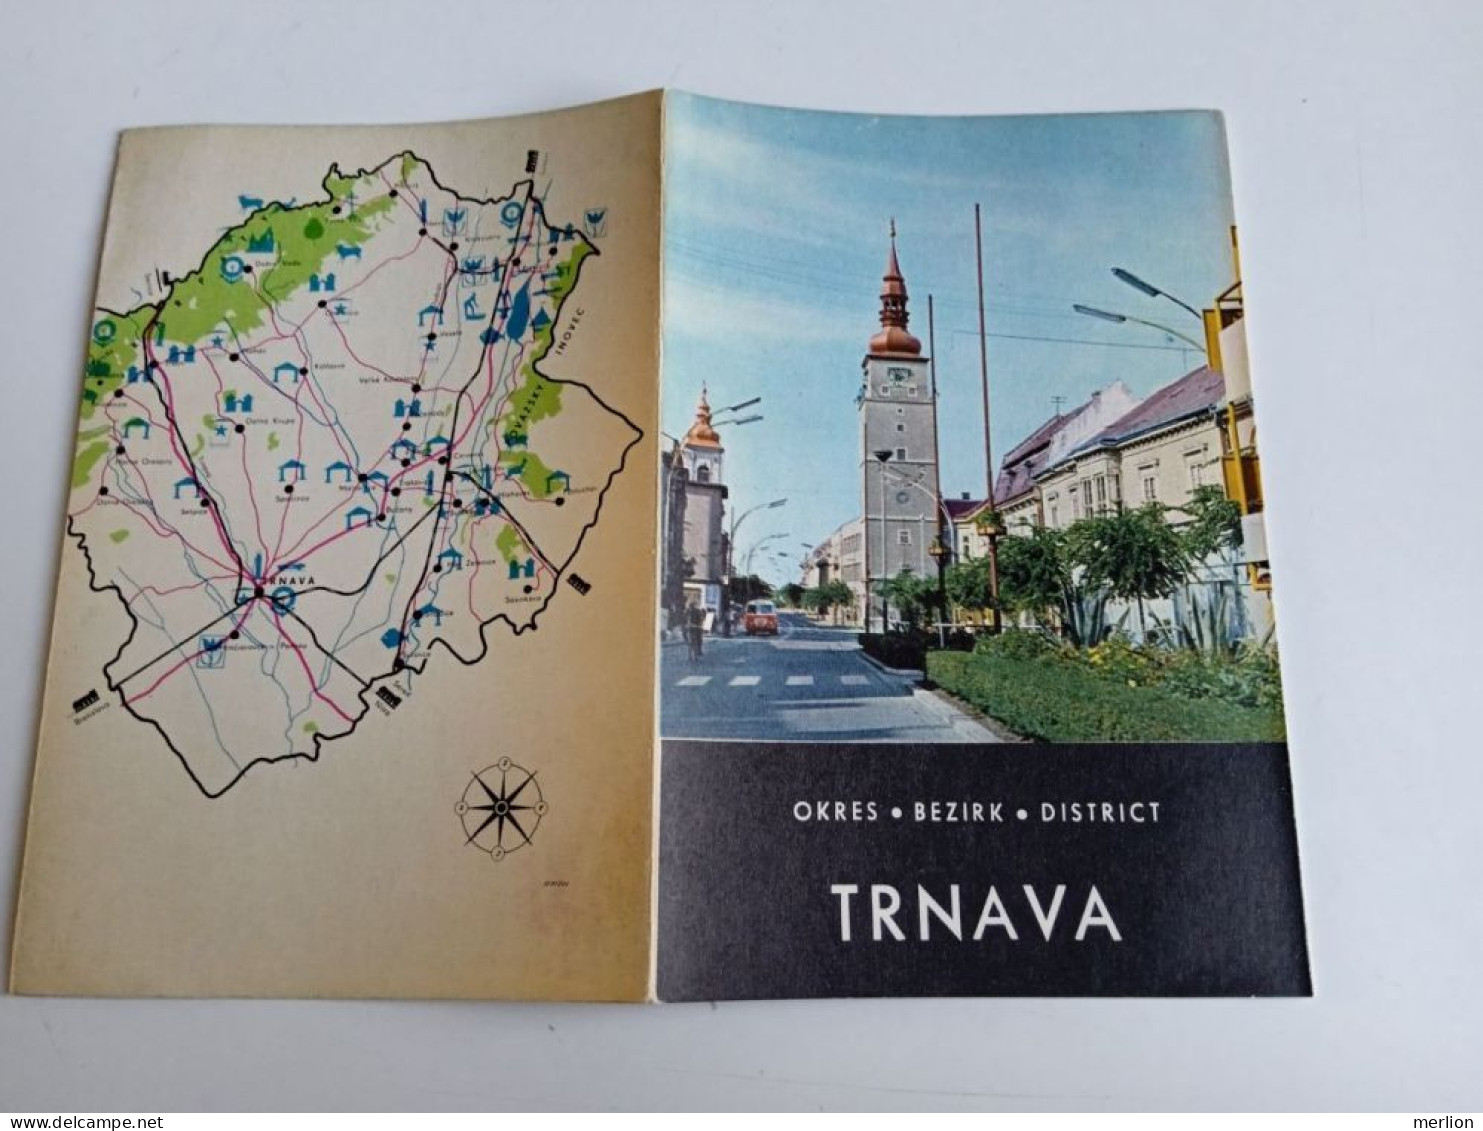 D203055   Czechoslovakia - Tourism Brochure - Slovakia  - TRNAVA      Ca 1960 - Dépliants Touristiques